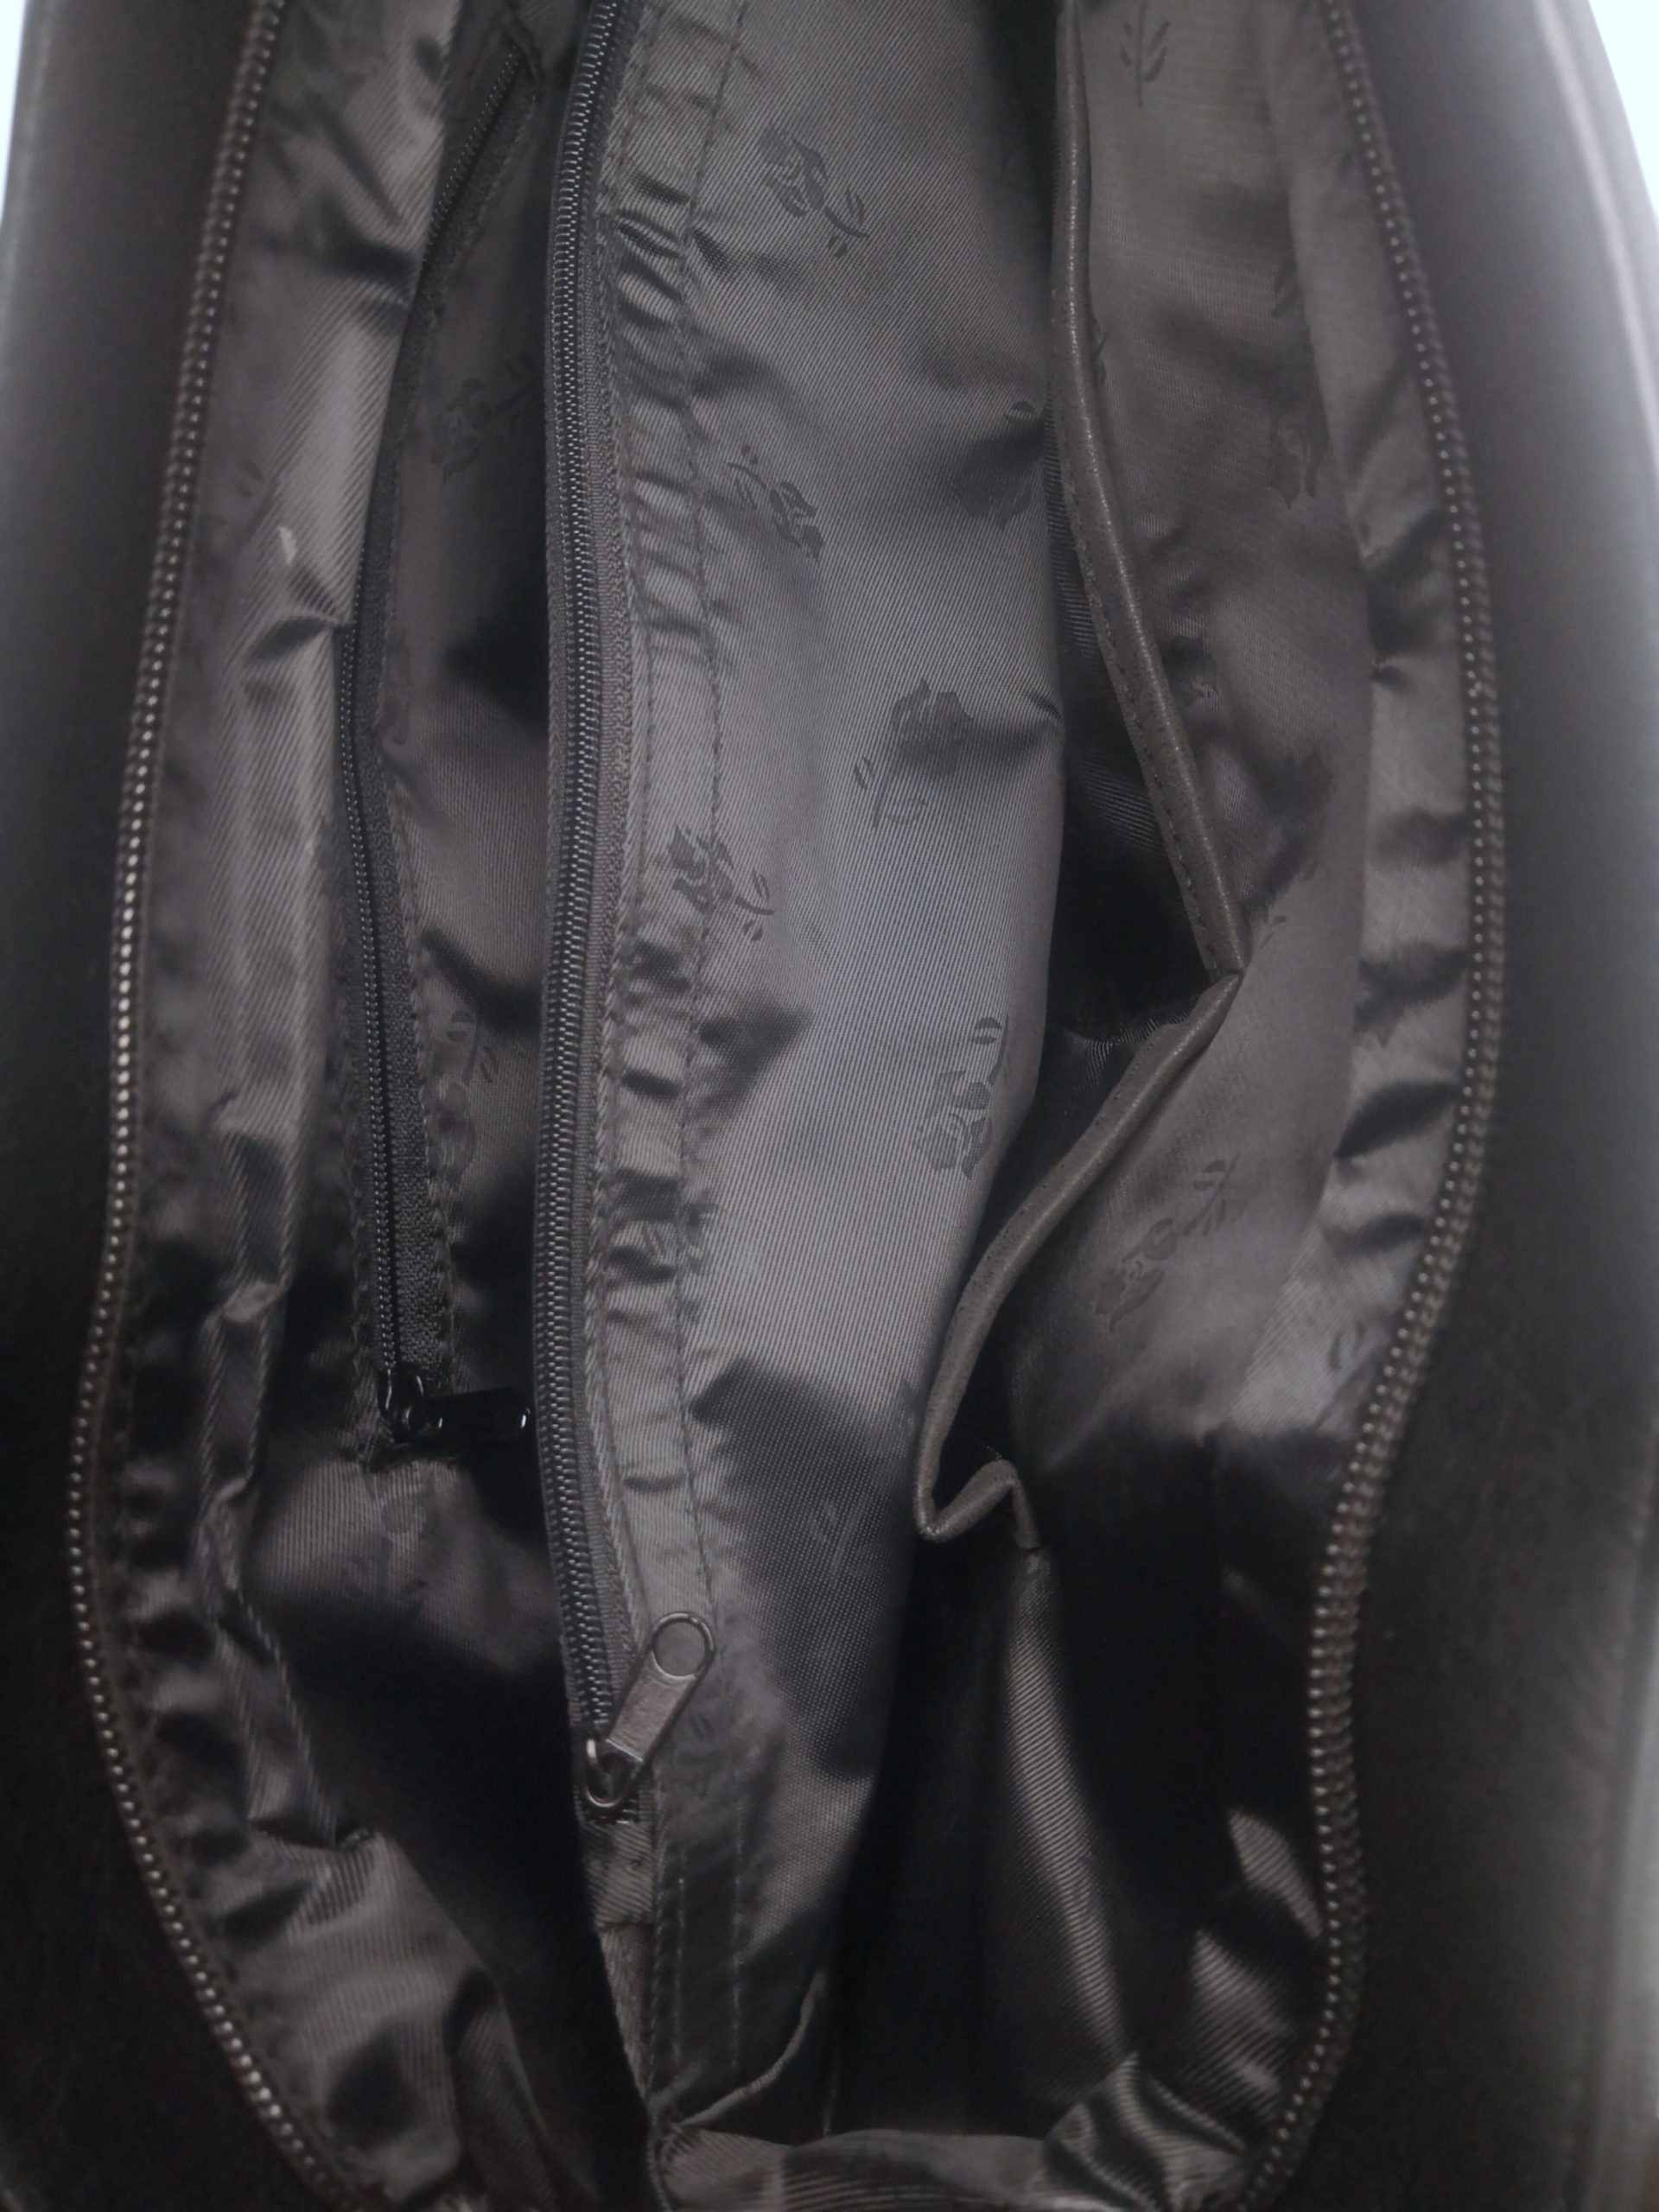 Moderní kabelka přes rameno z jemné eko kůže, Tapple H18067, černá, vnitřní uspořádání kabelky